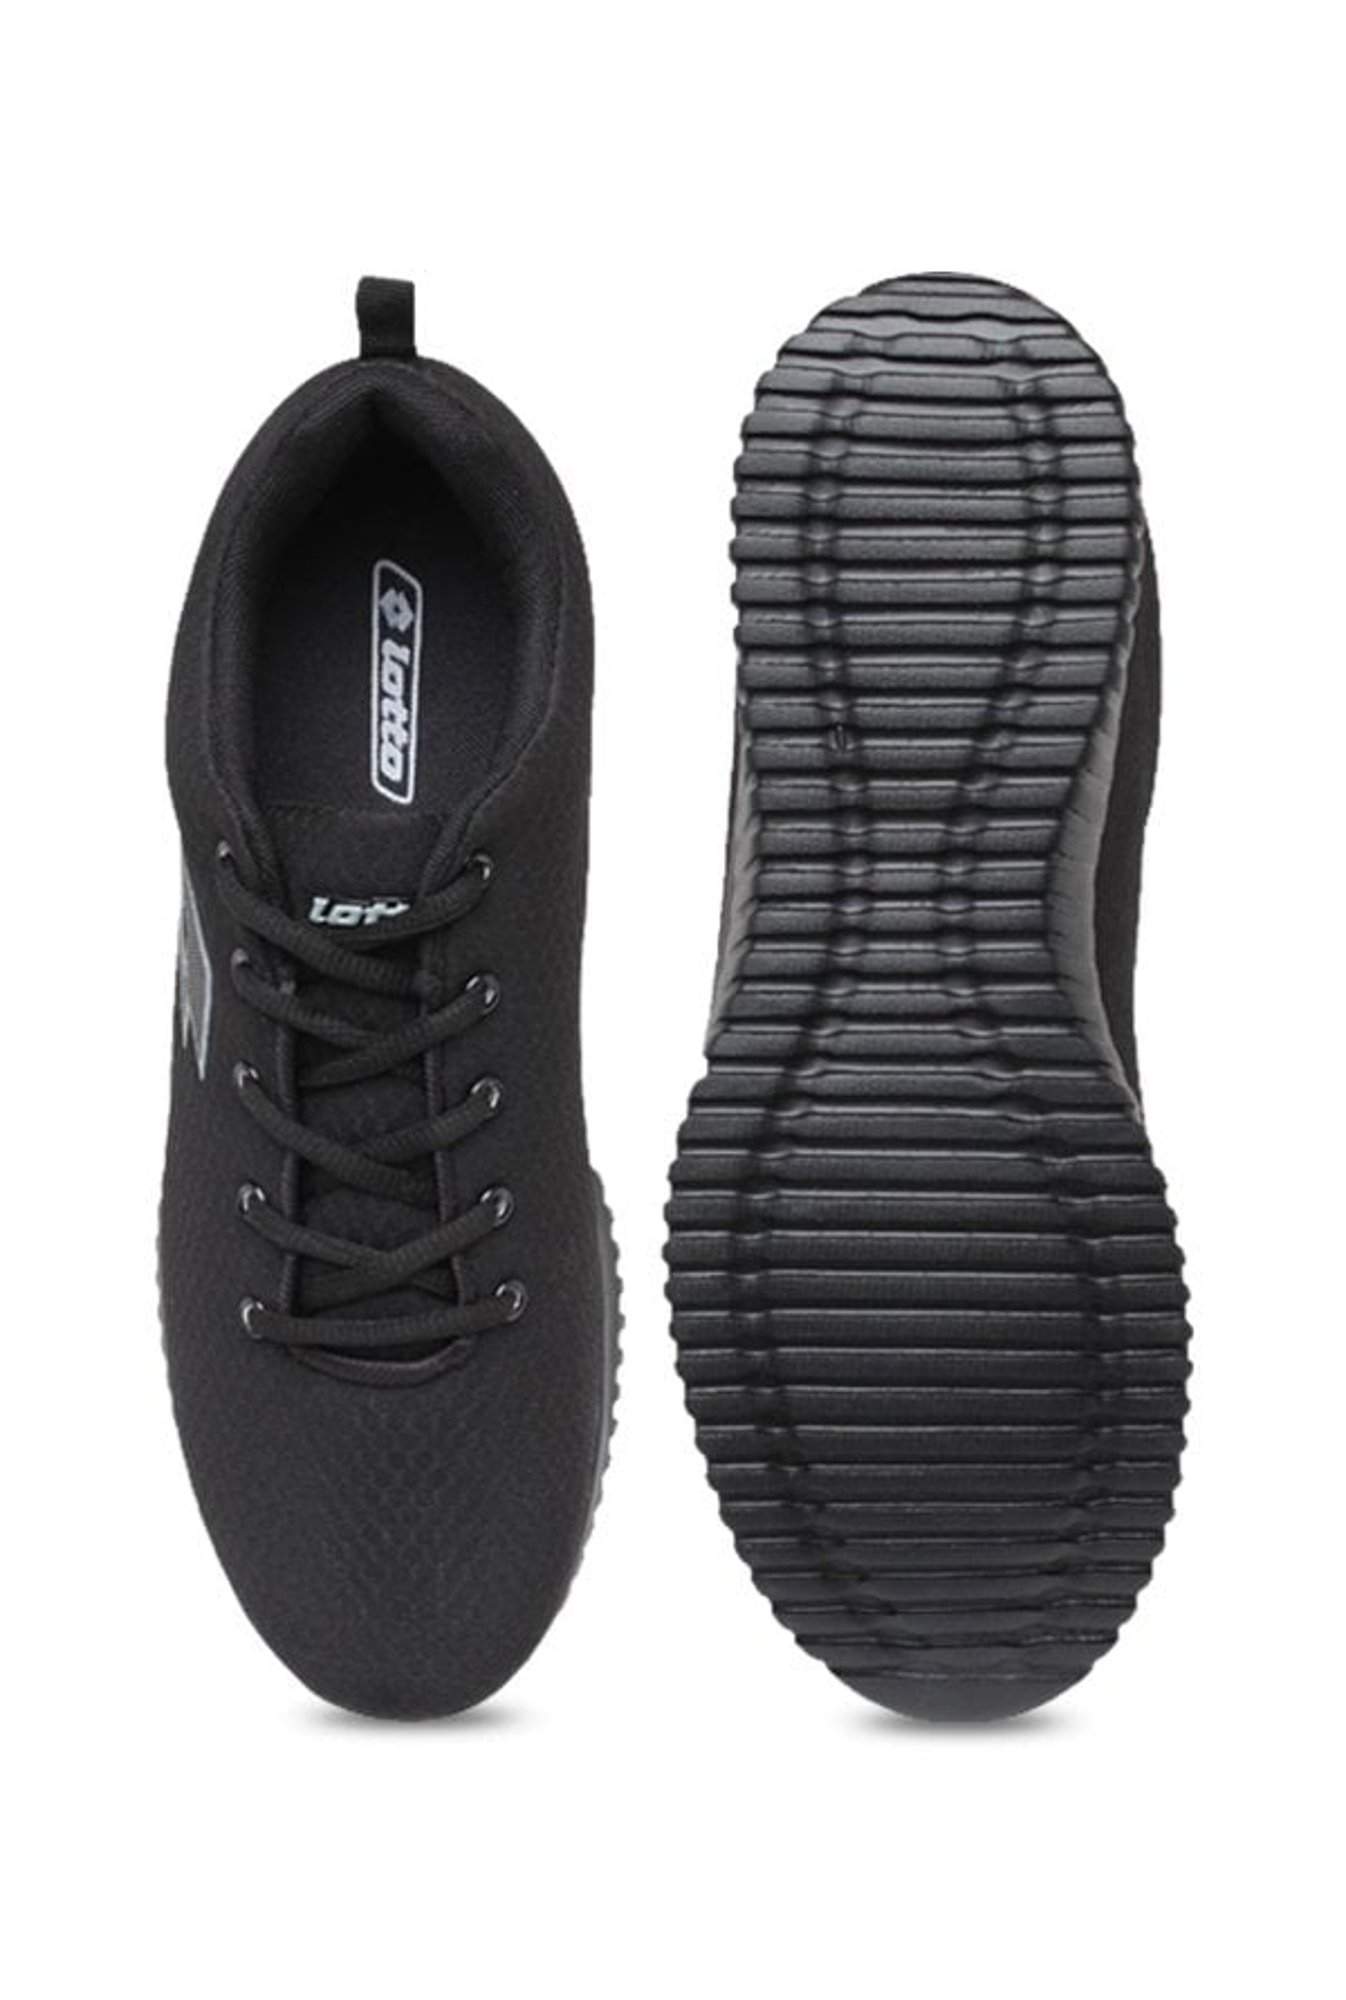 lotto vertigo shoes black